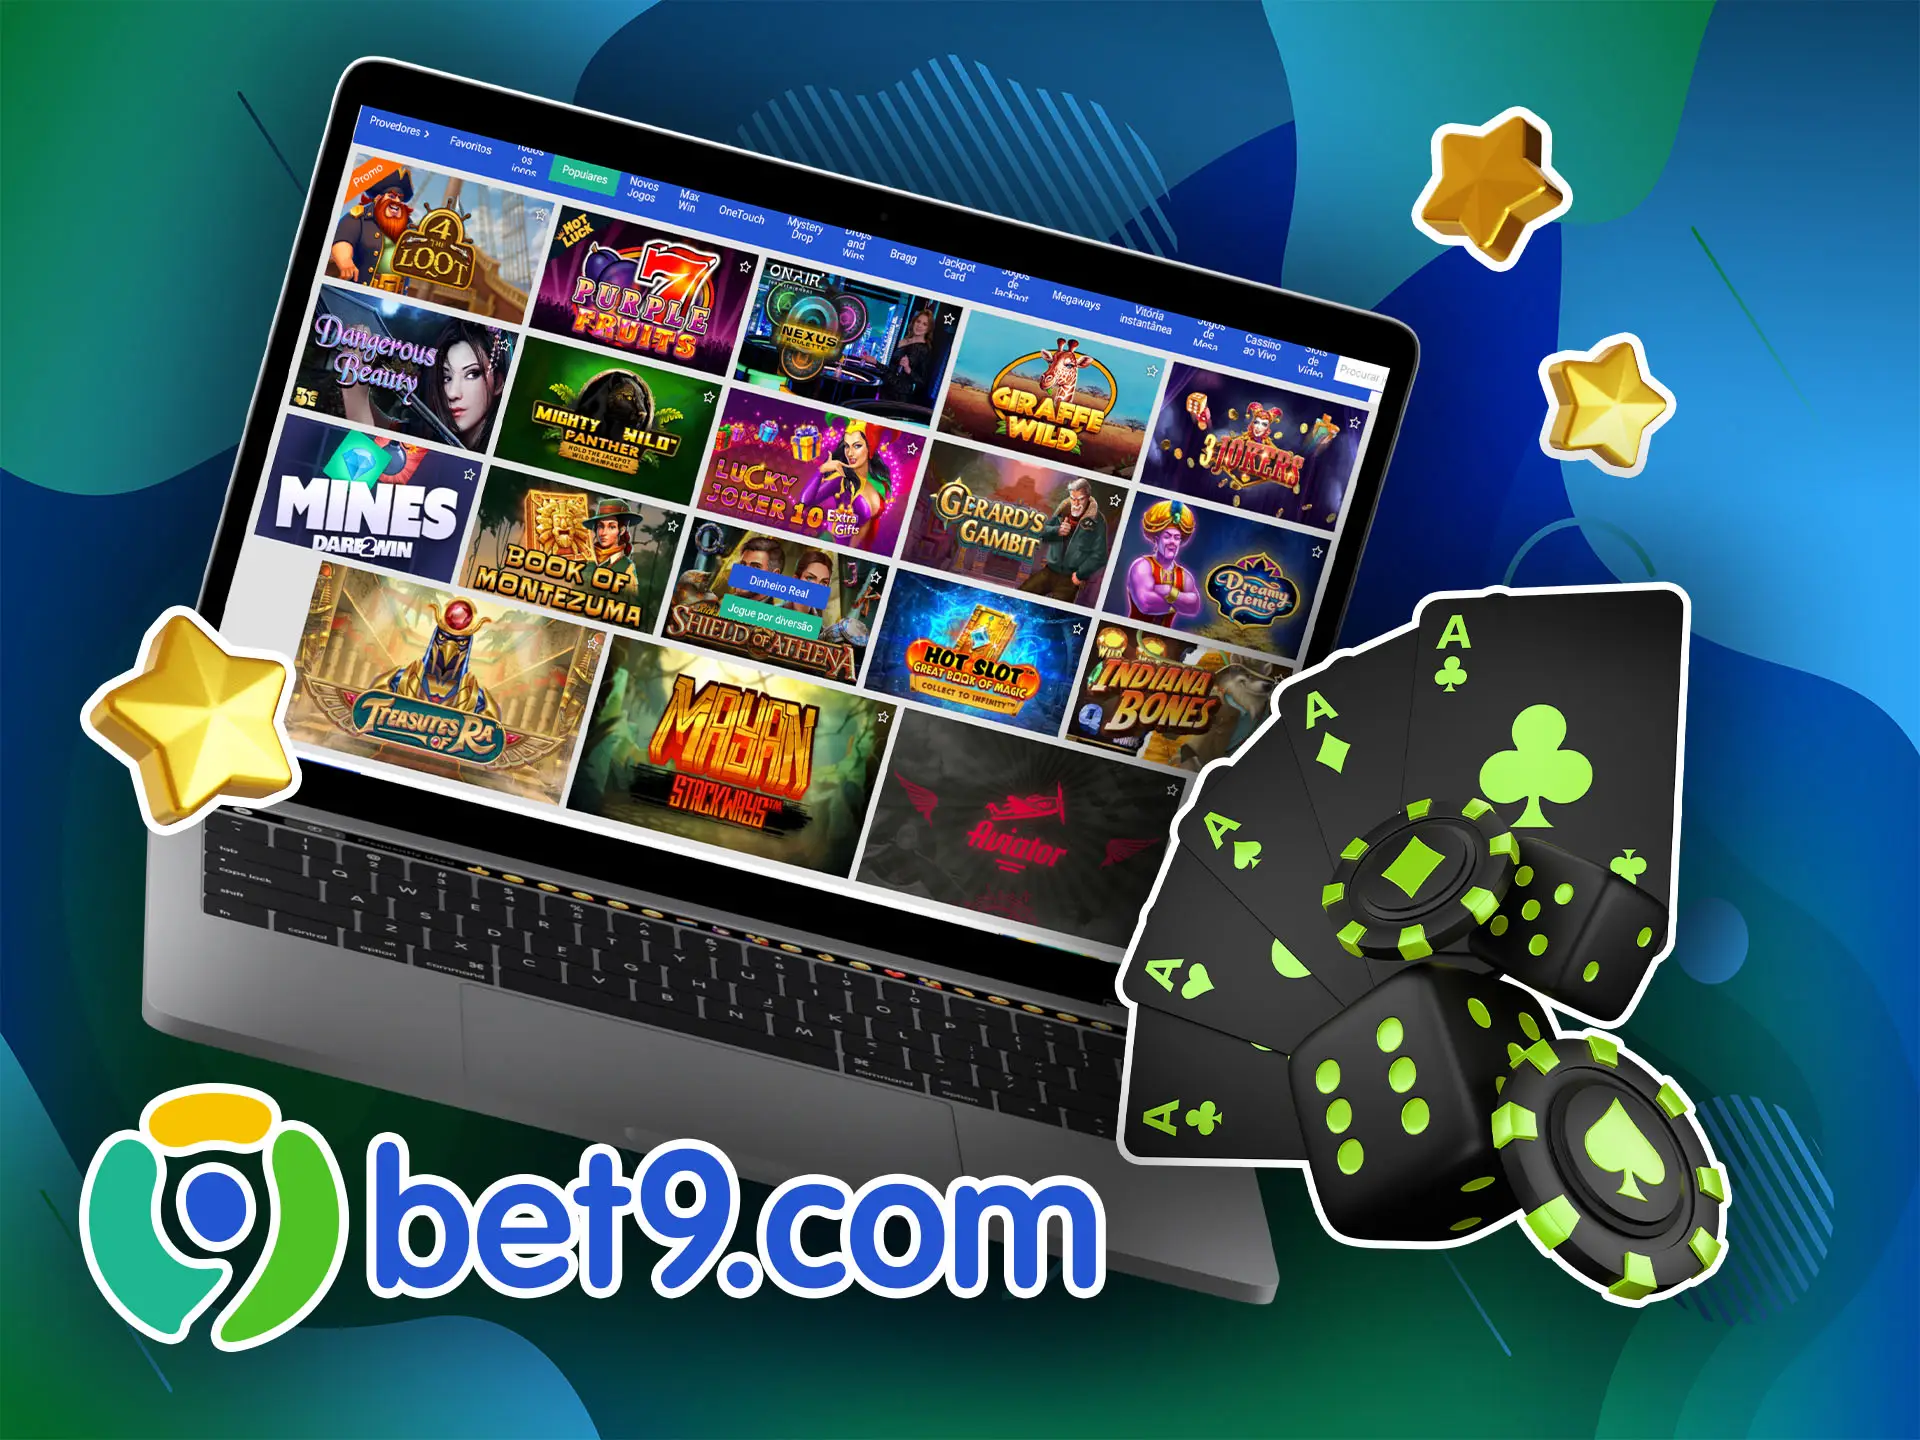 Roleta, pôquer, blackjack e bacará são os jogos mais populares no Bet9 Cassino.